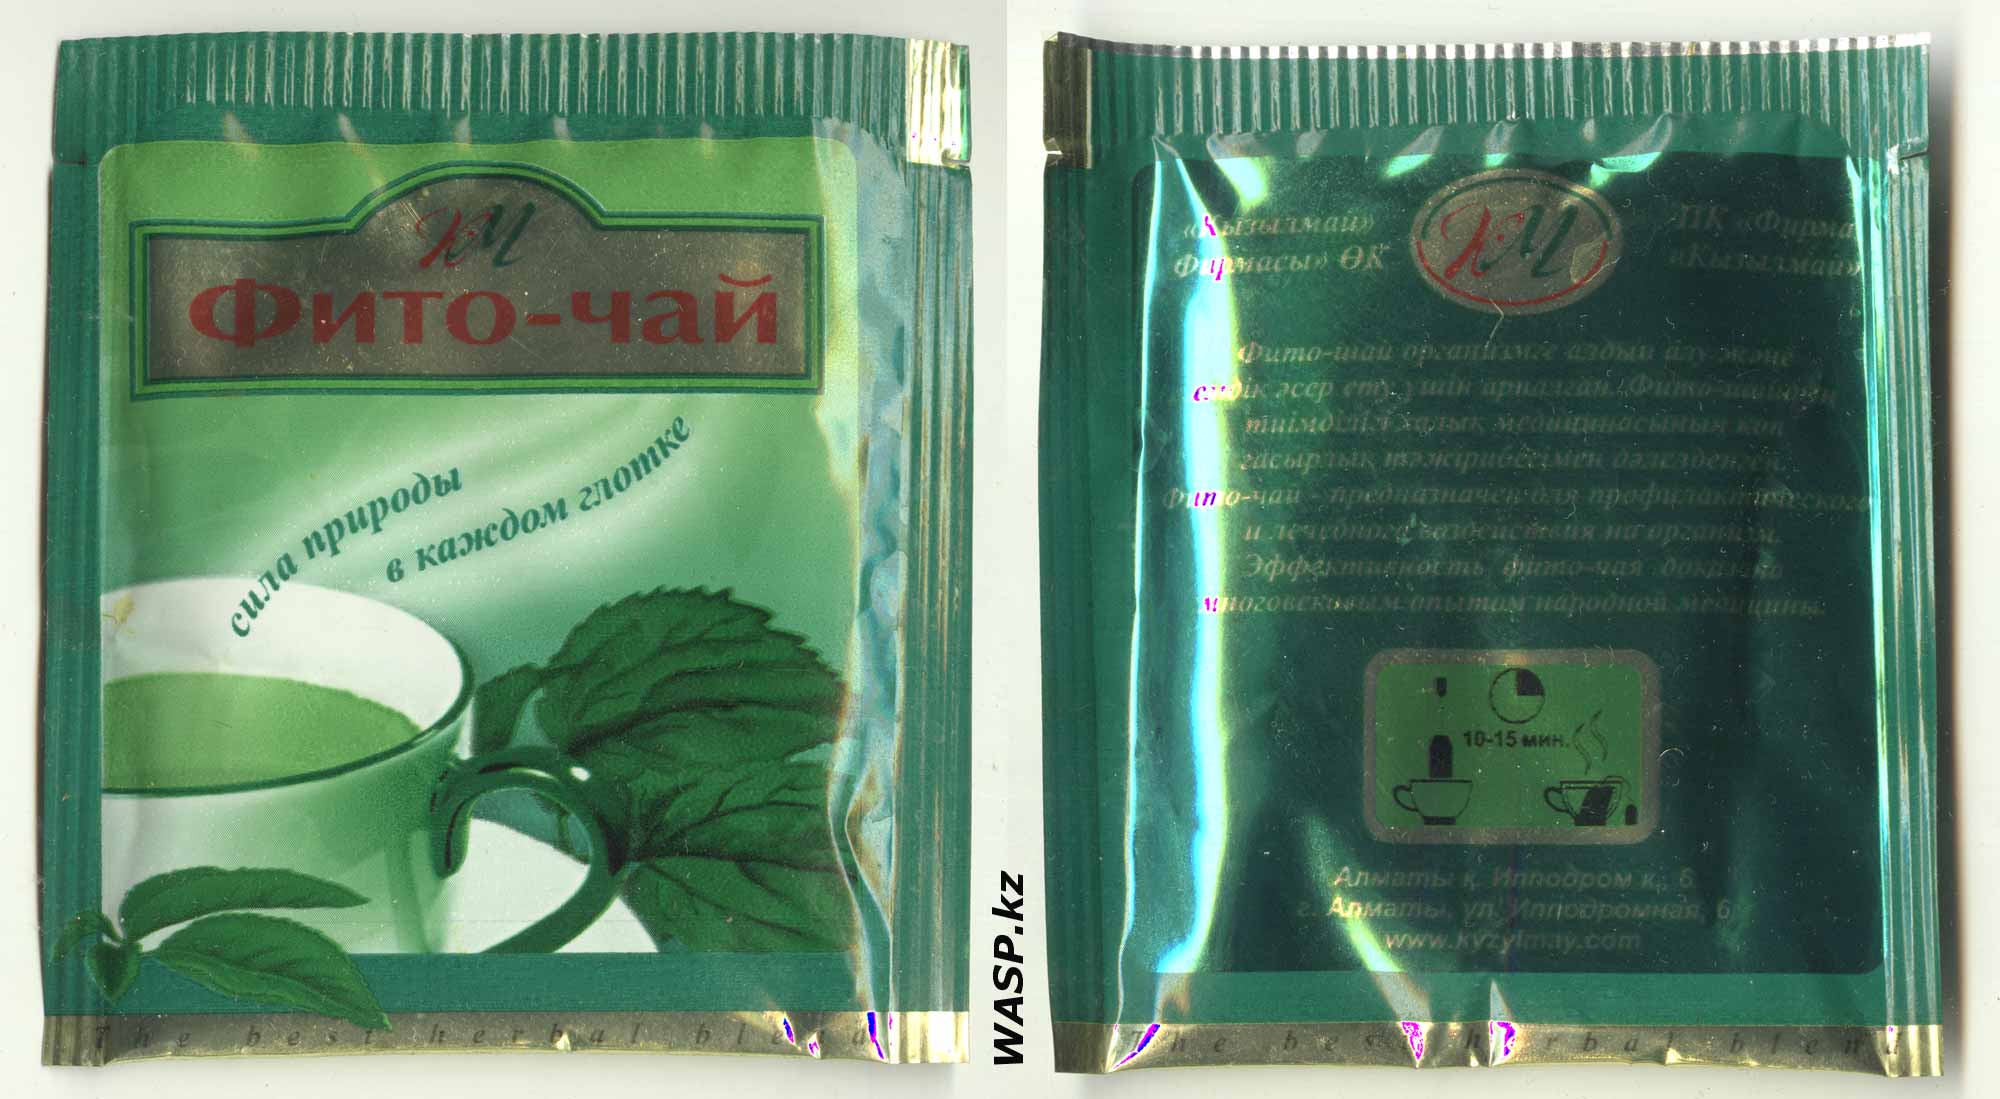 Полное описание Фито-чай Кызылмай в пакетиках, целебные свойства